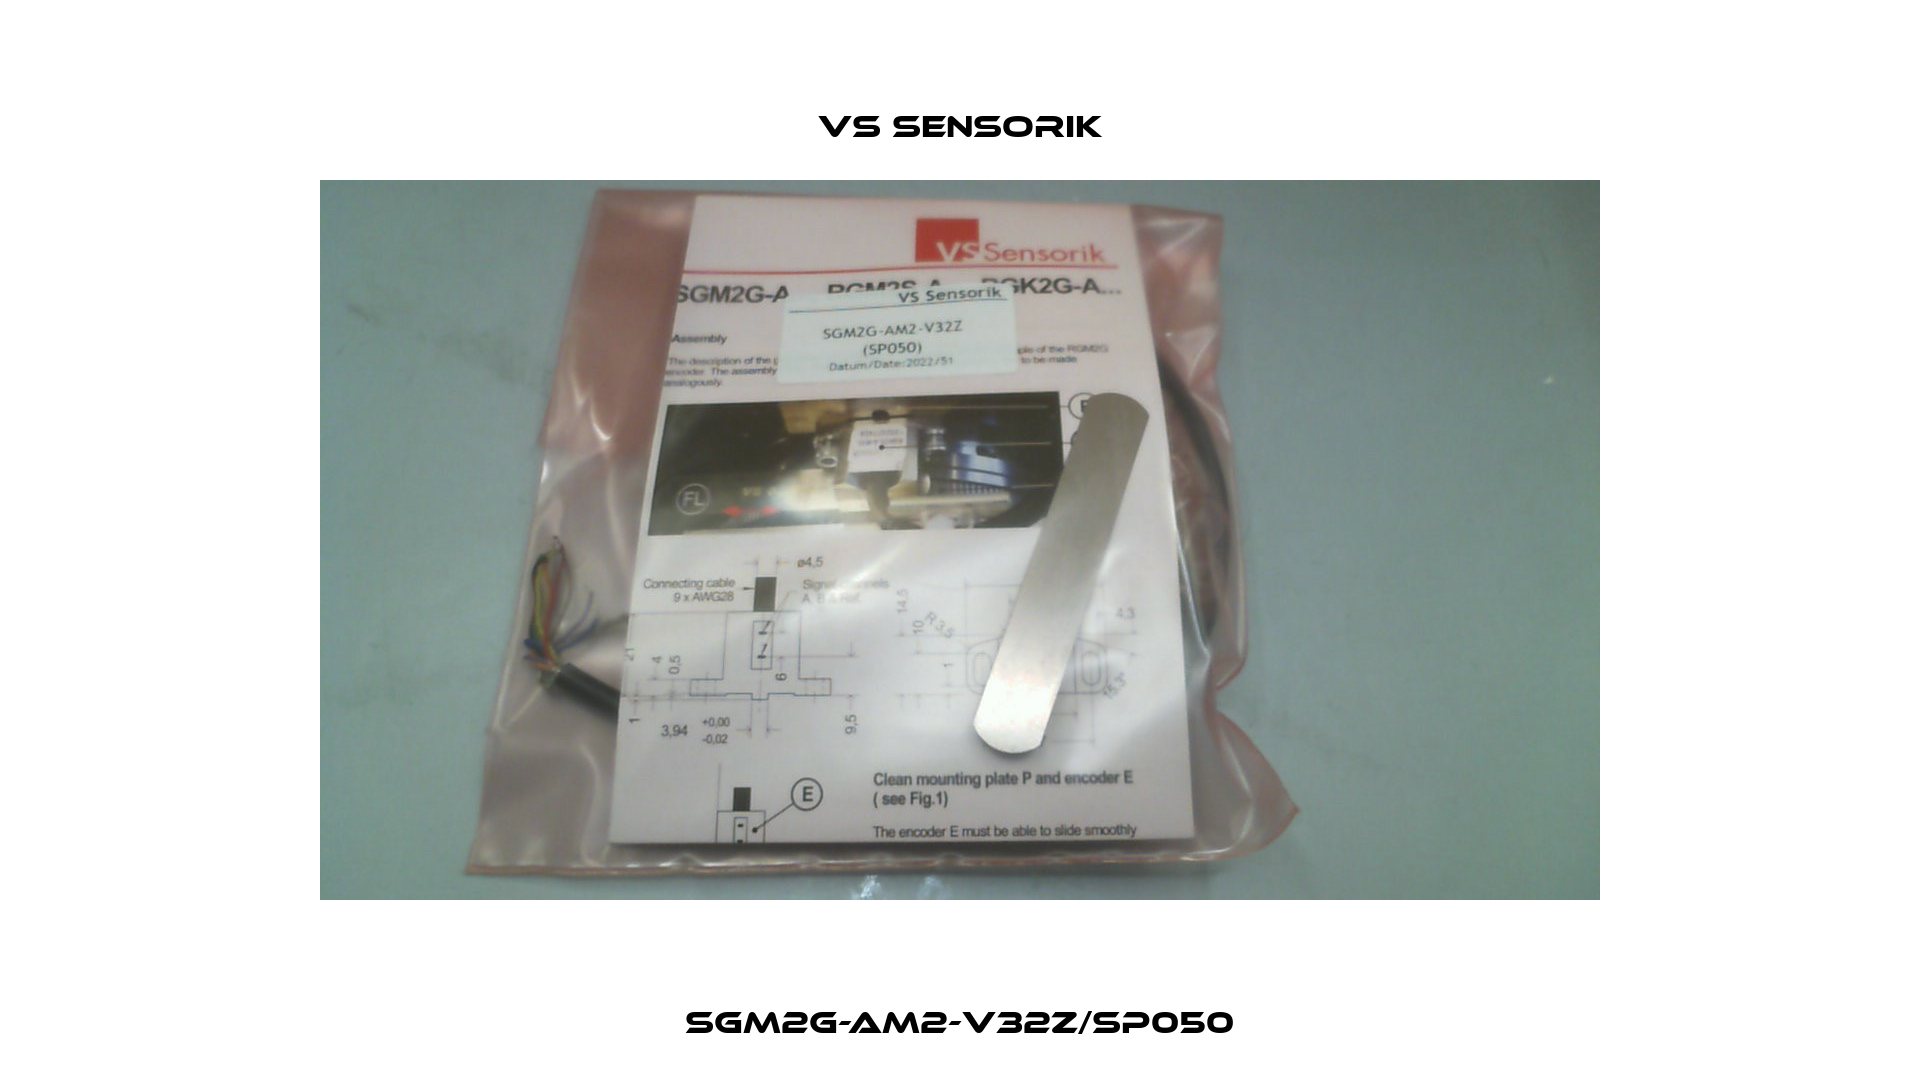 SGM2G-AM2-V32Z/SP050 VS Sensorik